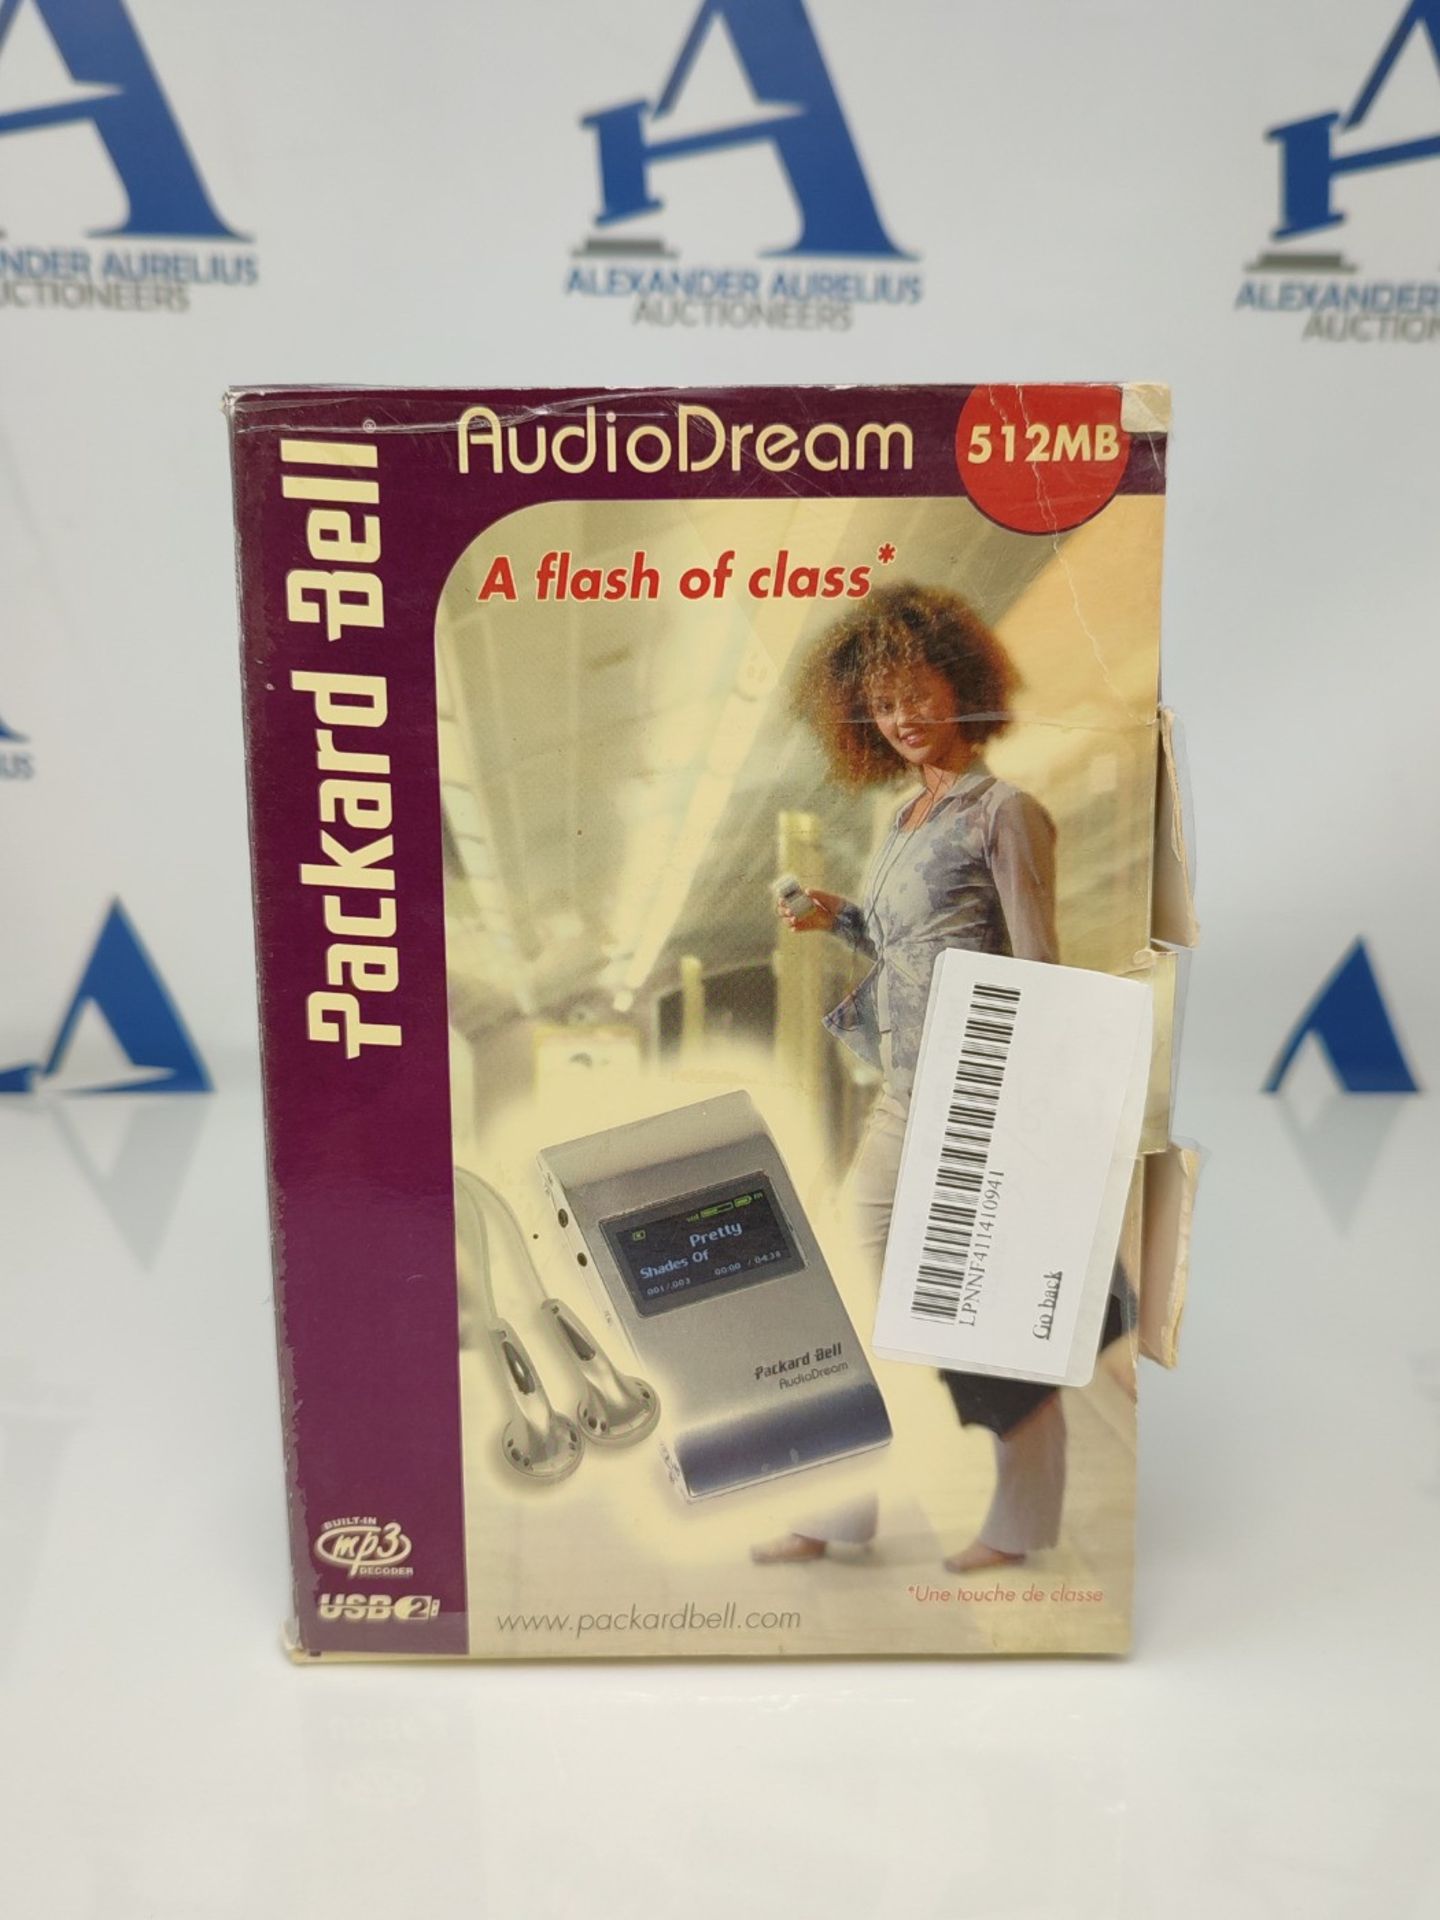 Packard Bell AudioDream MP3 player